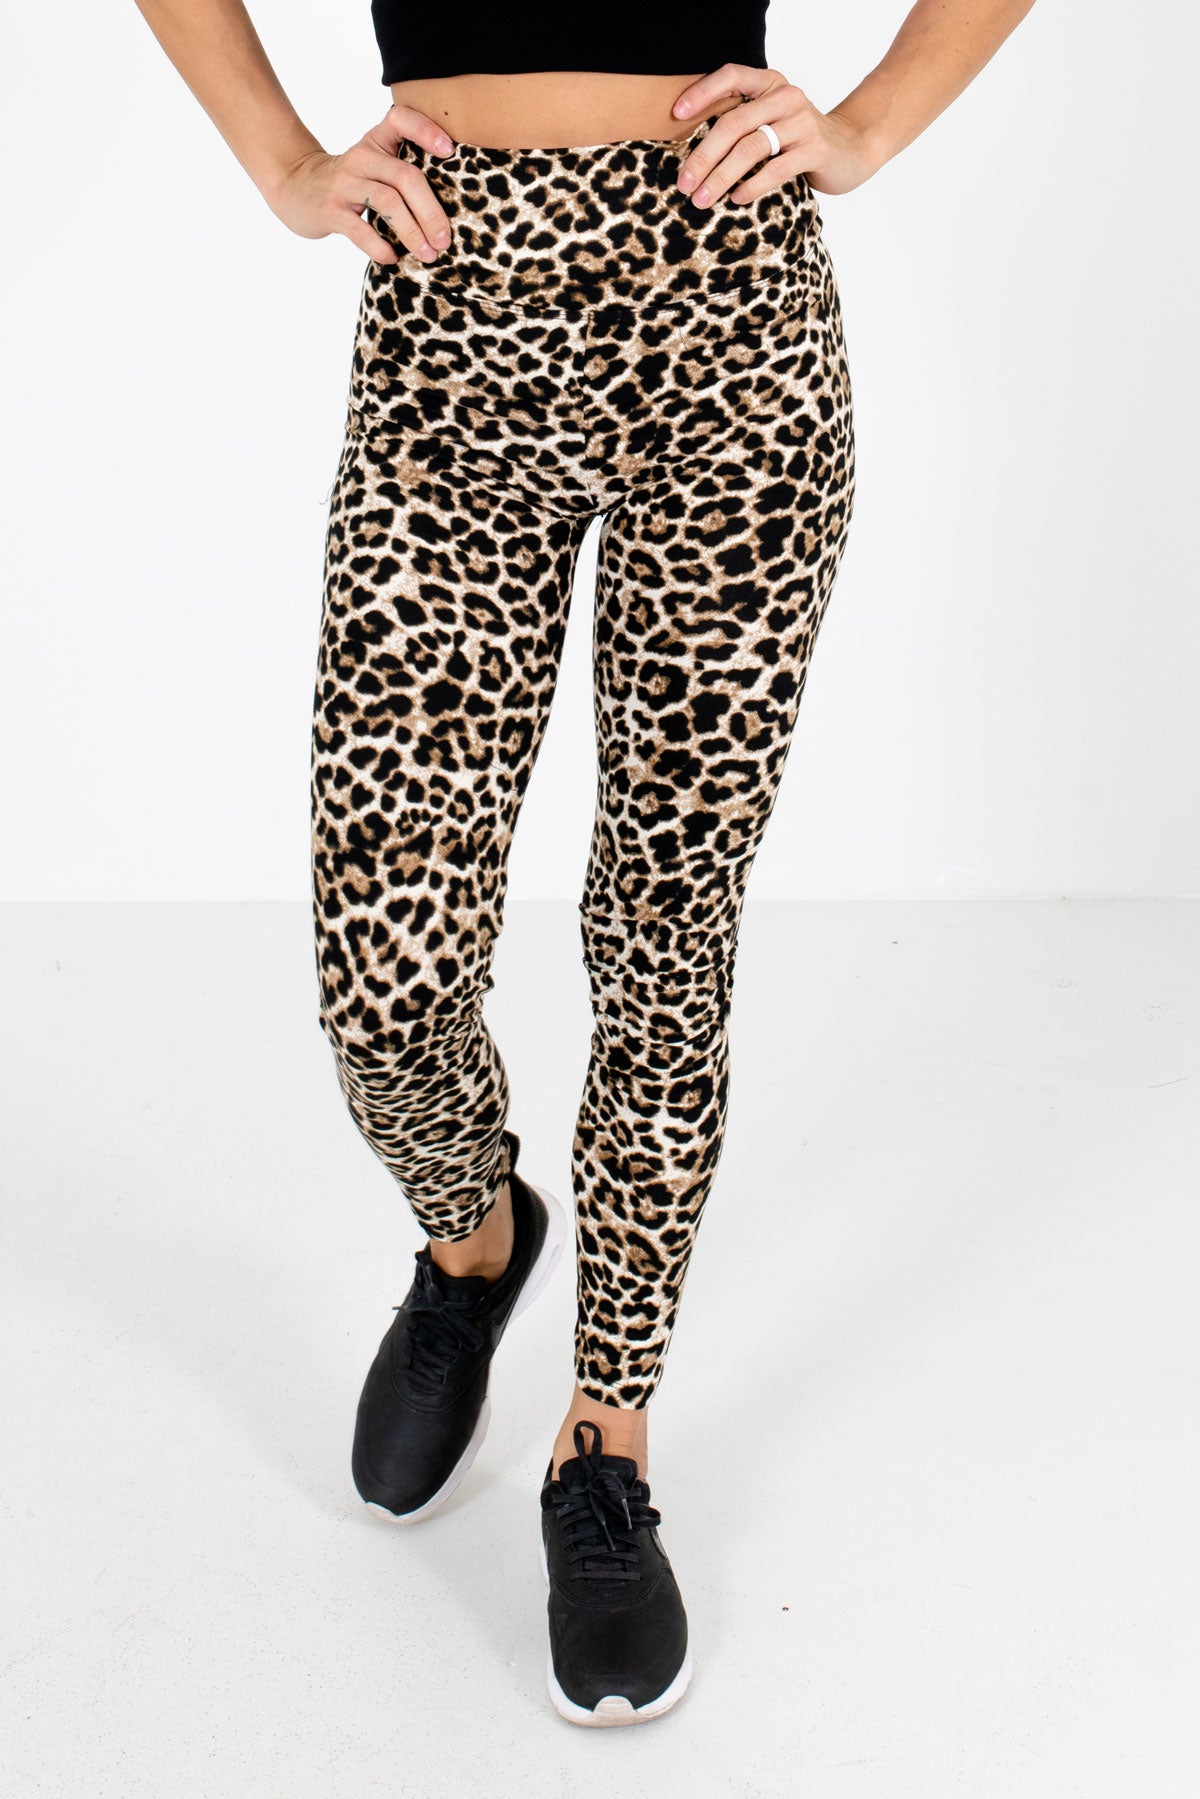 Beige Active Leopard Print Leggings | Boutique Activewear for Women